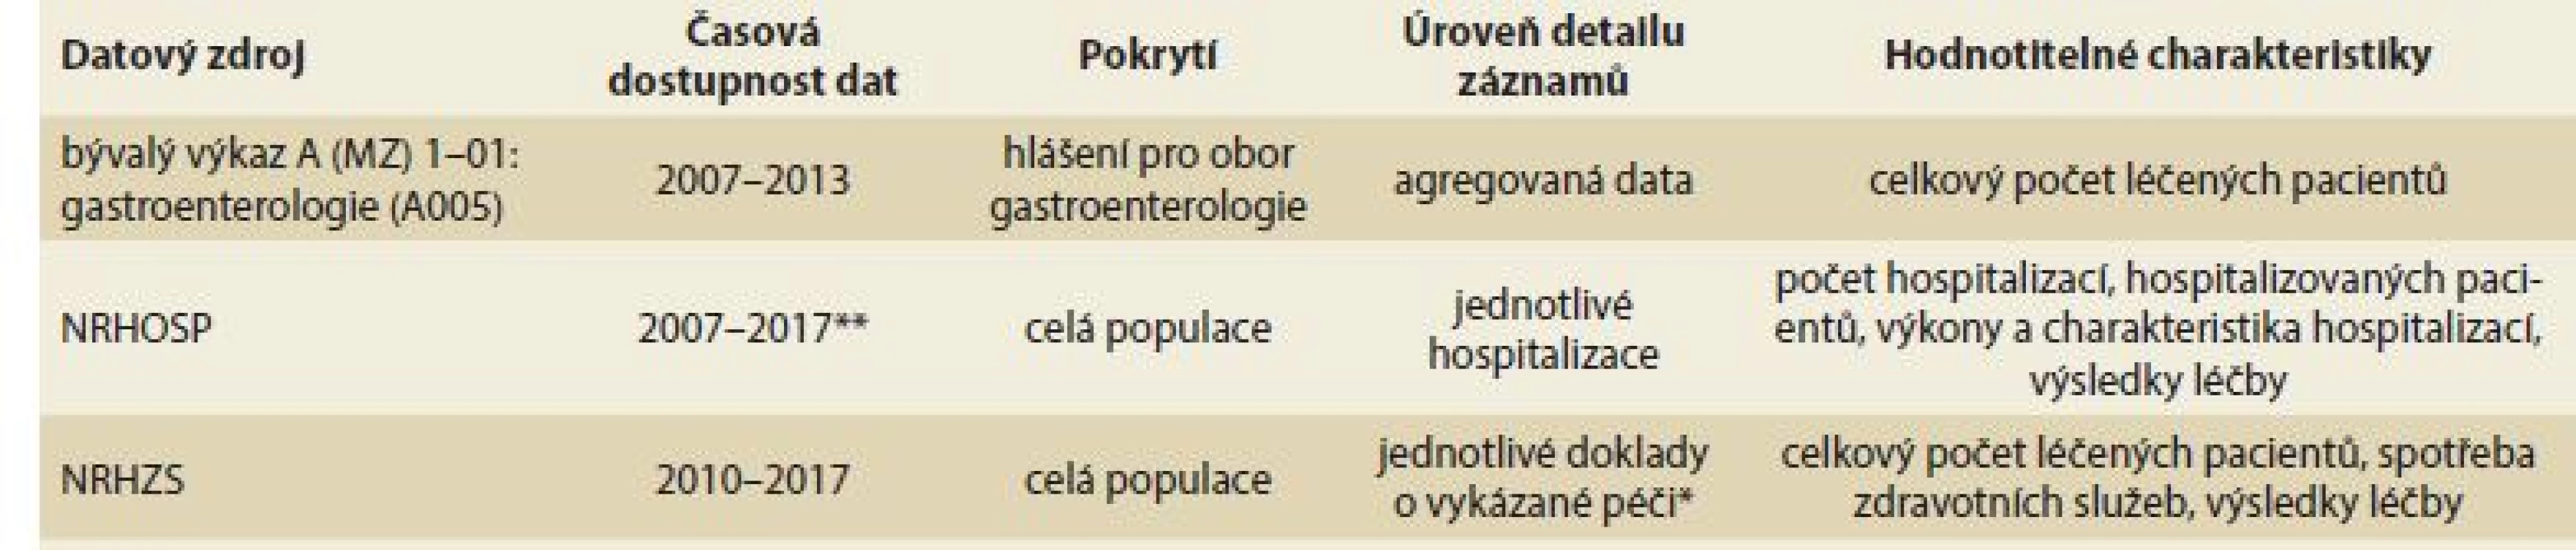 Dostupné datové zdroje pro hodnocení výskytu IBD v české populaci.<br>
Tab. 1. Available data sources for evaluation of IBD occurrence in the Czech population.